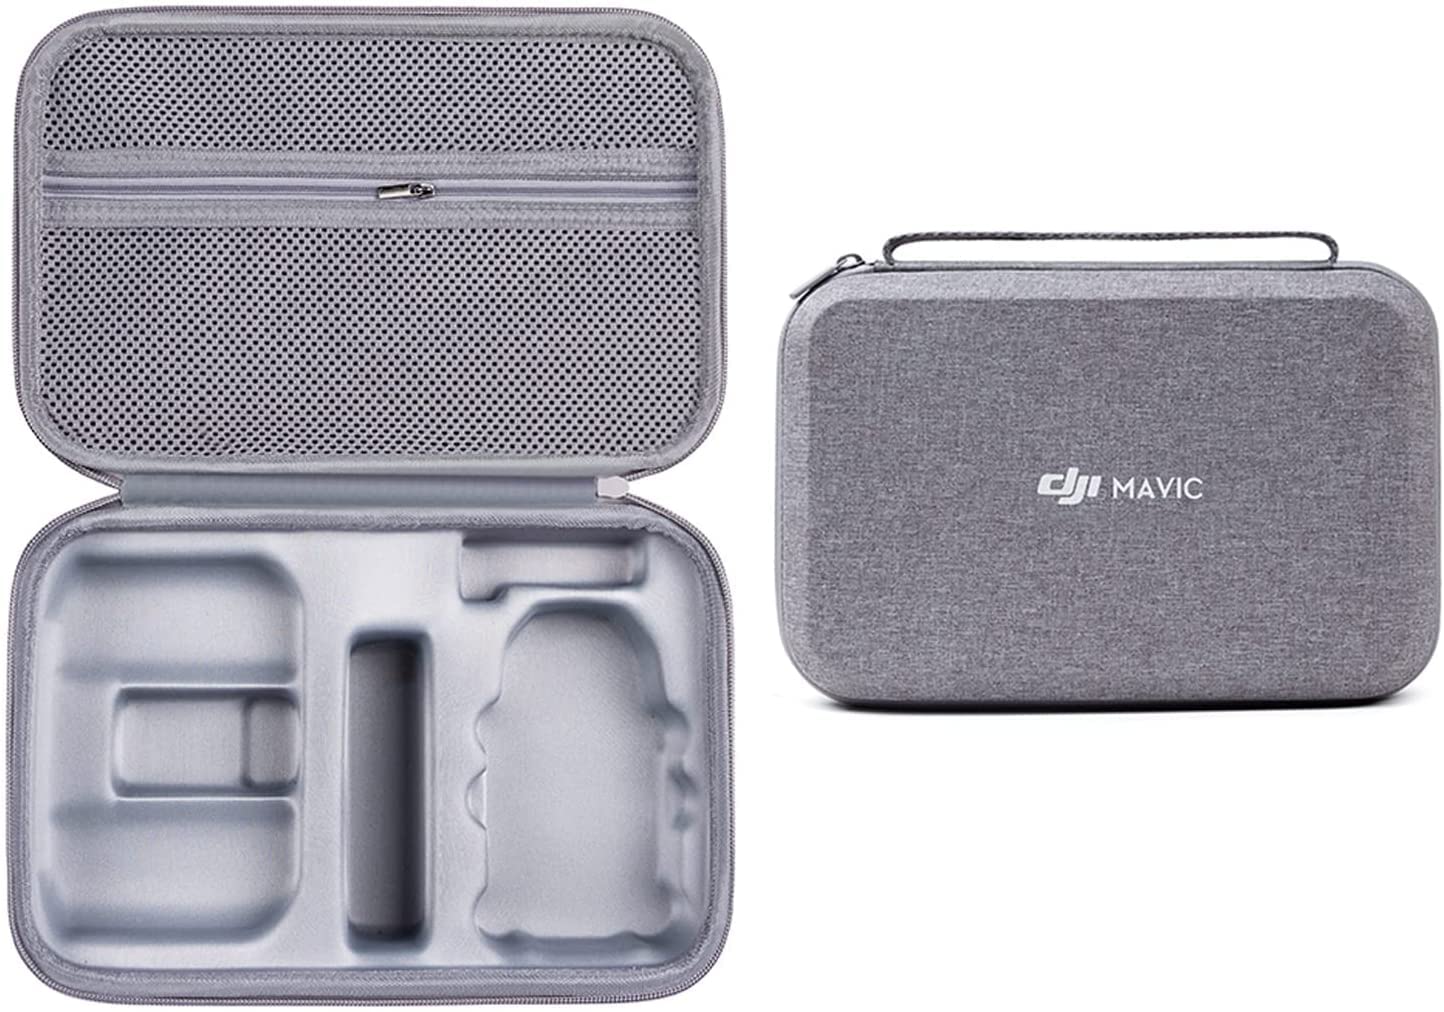 YueLi Mavic Mini 2 Tragetasche Wasserdichte Handtasche Tragbare Tasche Drohne Body Handtasche Grau Kompakte Box für DJI Mavic Mini 2 Drohne Zubehör von YueLi